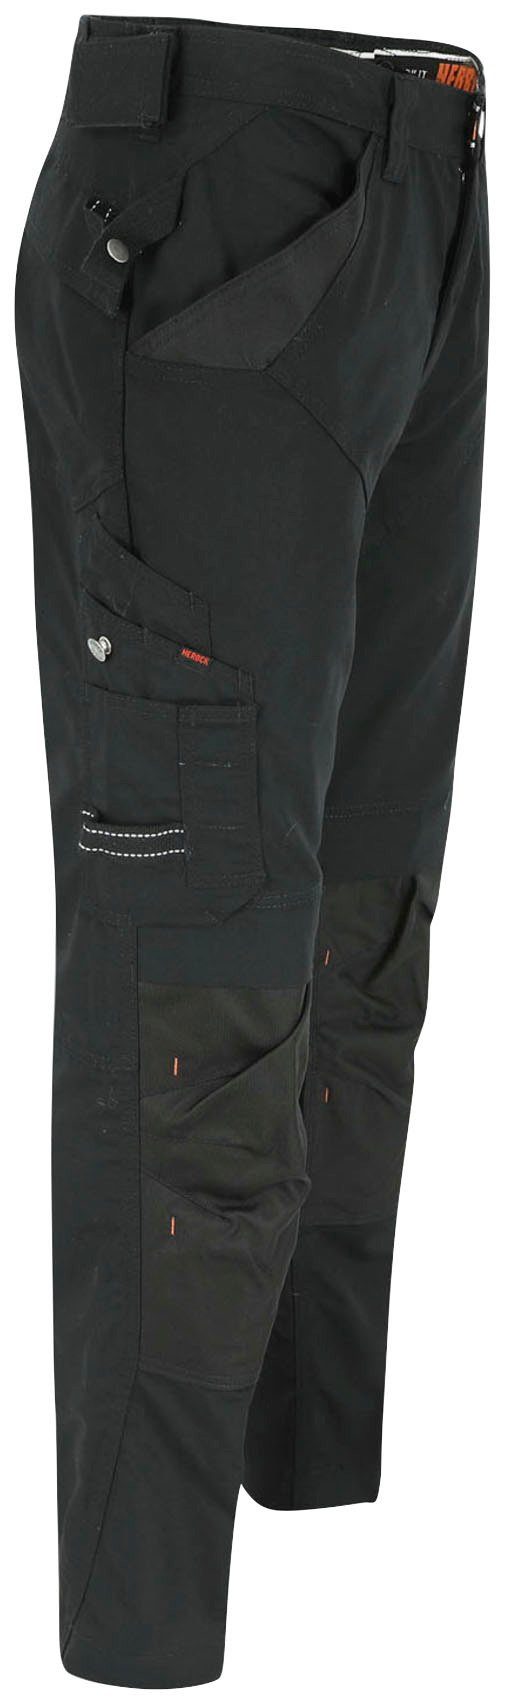 Wasserabweisend schwarz Herock Regelbarer Taschen bequem - APOLLO Bund - Arbeitshose SHORTLEG 8 leicht & - HOSE